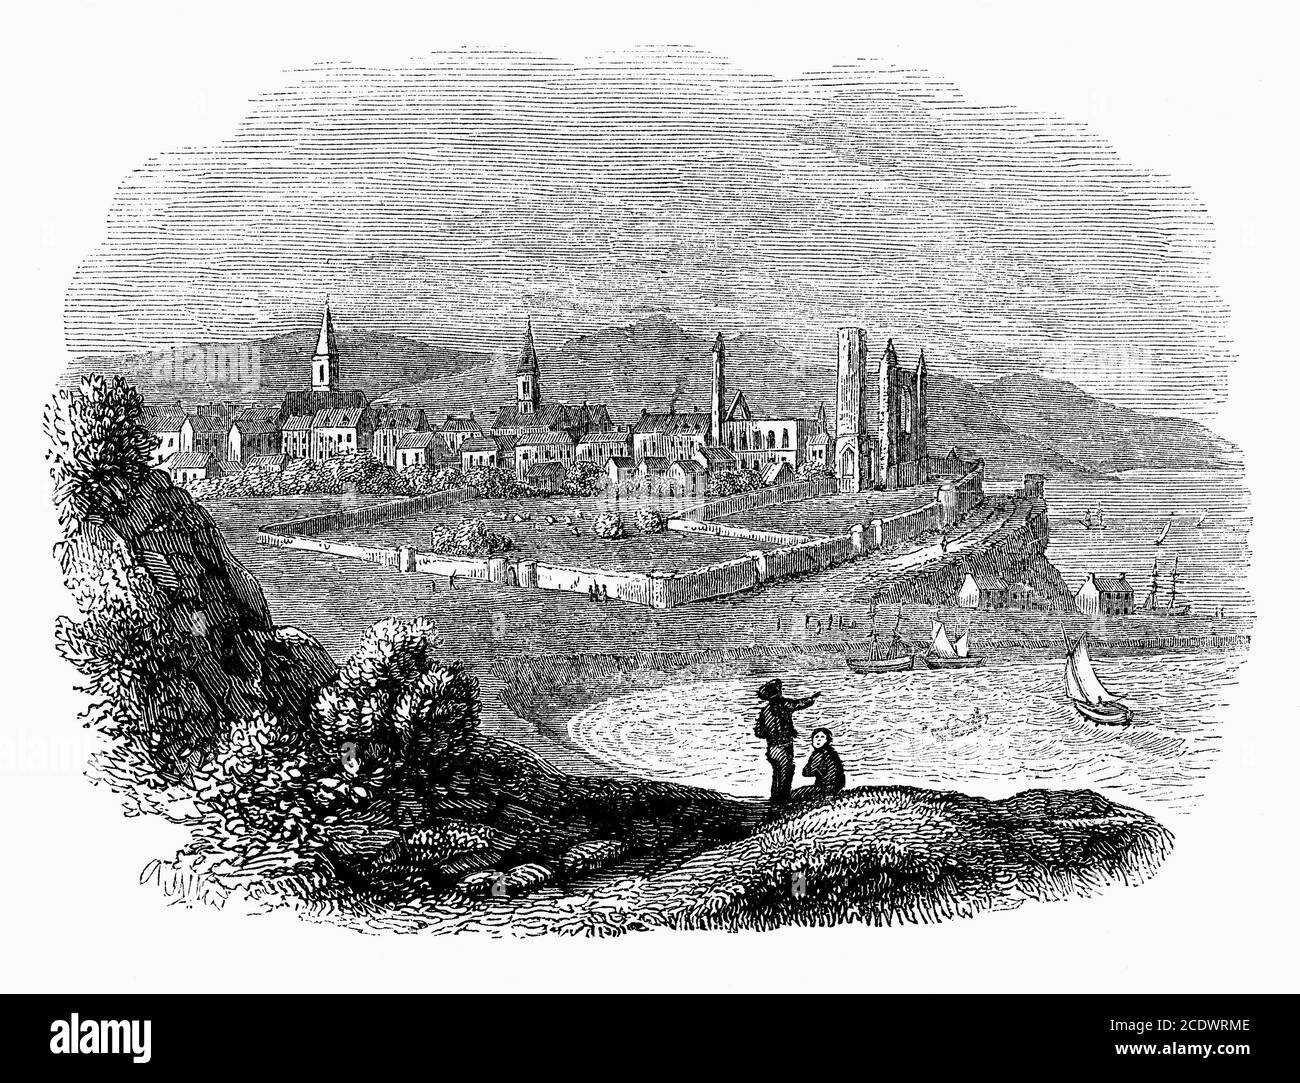 Eine alte Gravur von St Andrews, Fife, Schottland, Großbritannien, einer Stadt an der Ostküste der Grafschaft, 30 Meilen (50 km) nordöstlich von Edinburgh. In der Stadt befindet sich die University of St Andrews, die drittälteste Universität der englischsprachigen Welt. Die berühmte St. Andrews Kathedrale (Mitte rechts), die größte in Schottland, wurde 1160 erbaut. 1559 verfiel die Stadt nach der gewaltsamen schottischen Reformation und den Kriegen der drei Königreiche. Sie verlor ihren Status als kirchliche Hauptstadt Schottlands und die Kathedrale wurde zu Ruinen. St Andrews ist auch weltweit als ‘Heimat des Golfsports’ bekannt. Stockfoto